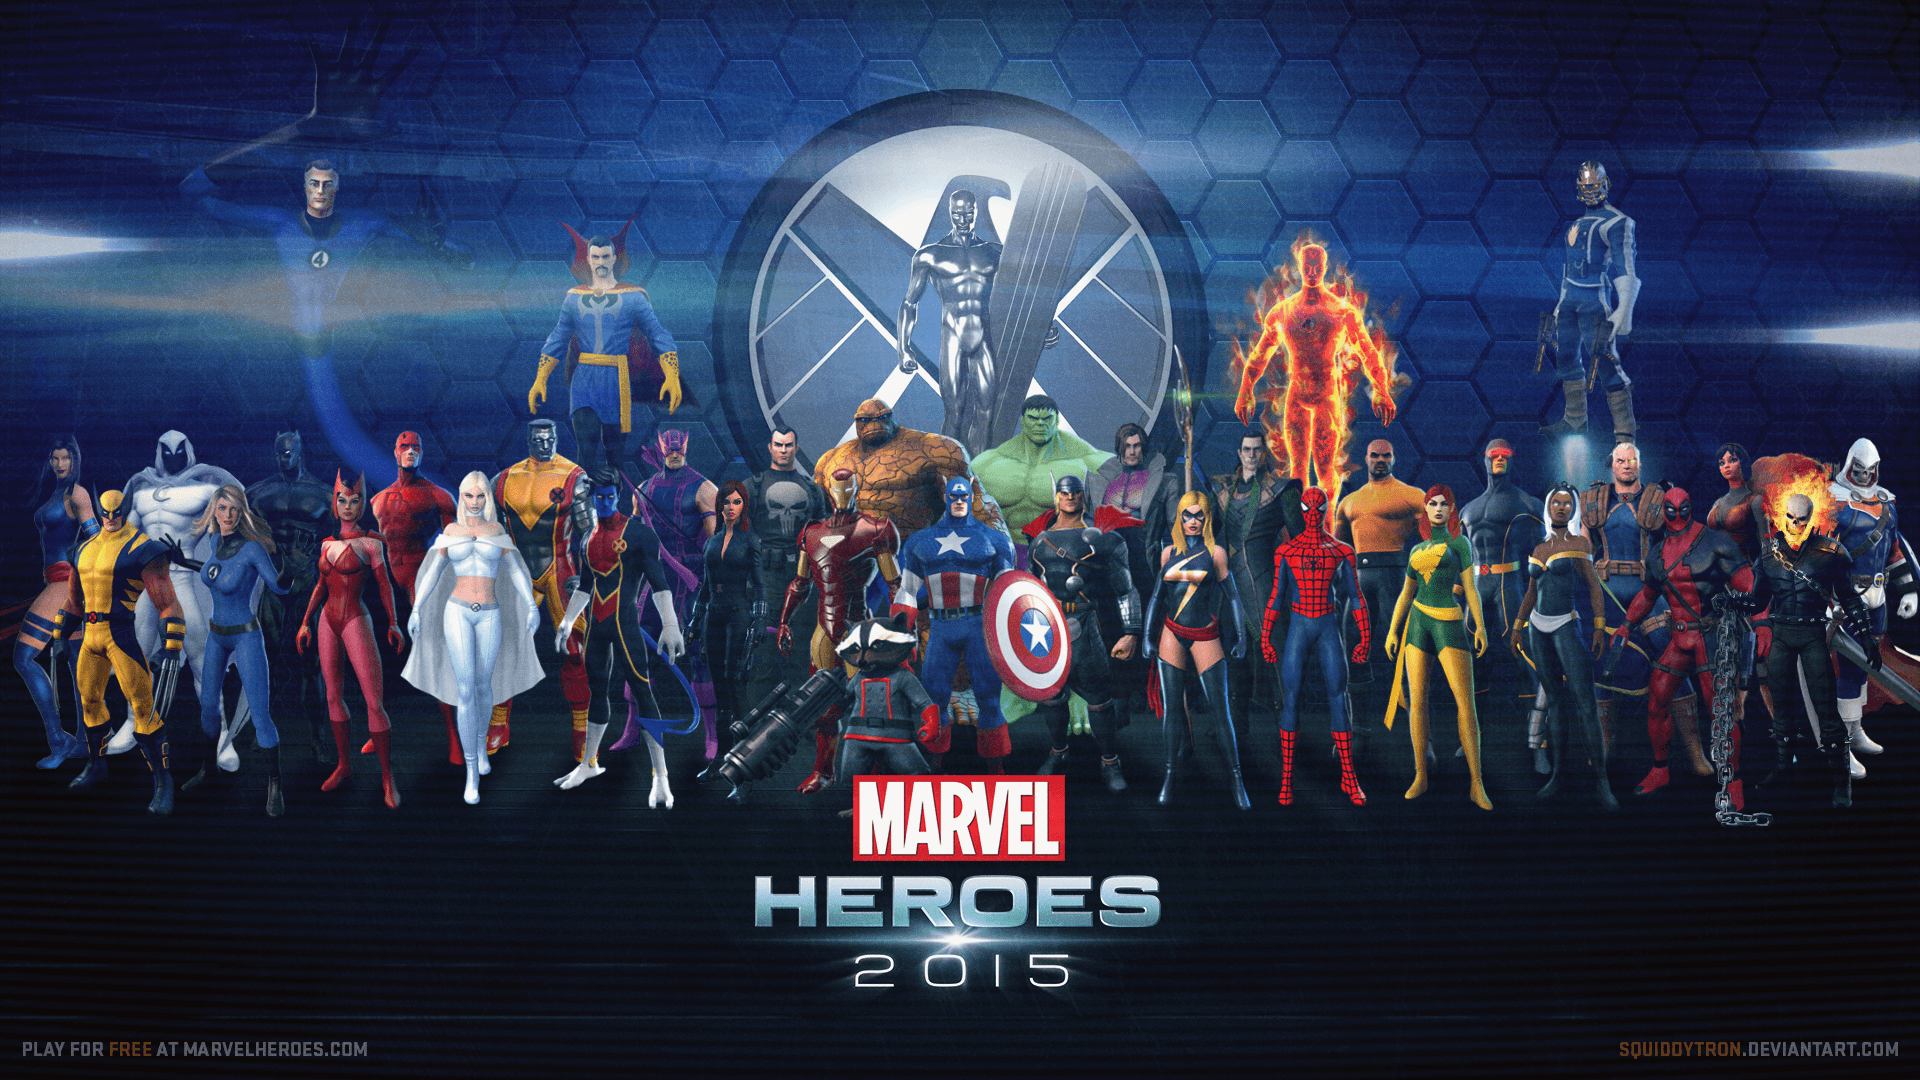 Marvel Heroes Wallpaper, Top Ranked Marvel Heroes Wallpaper